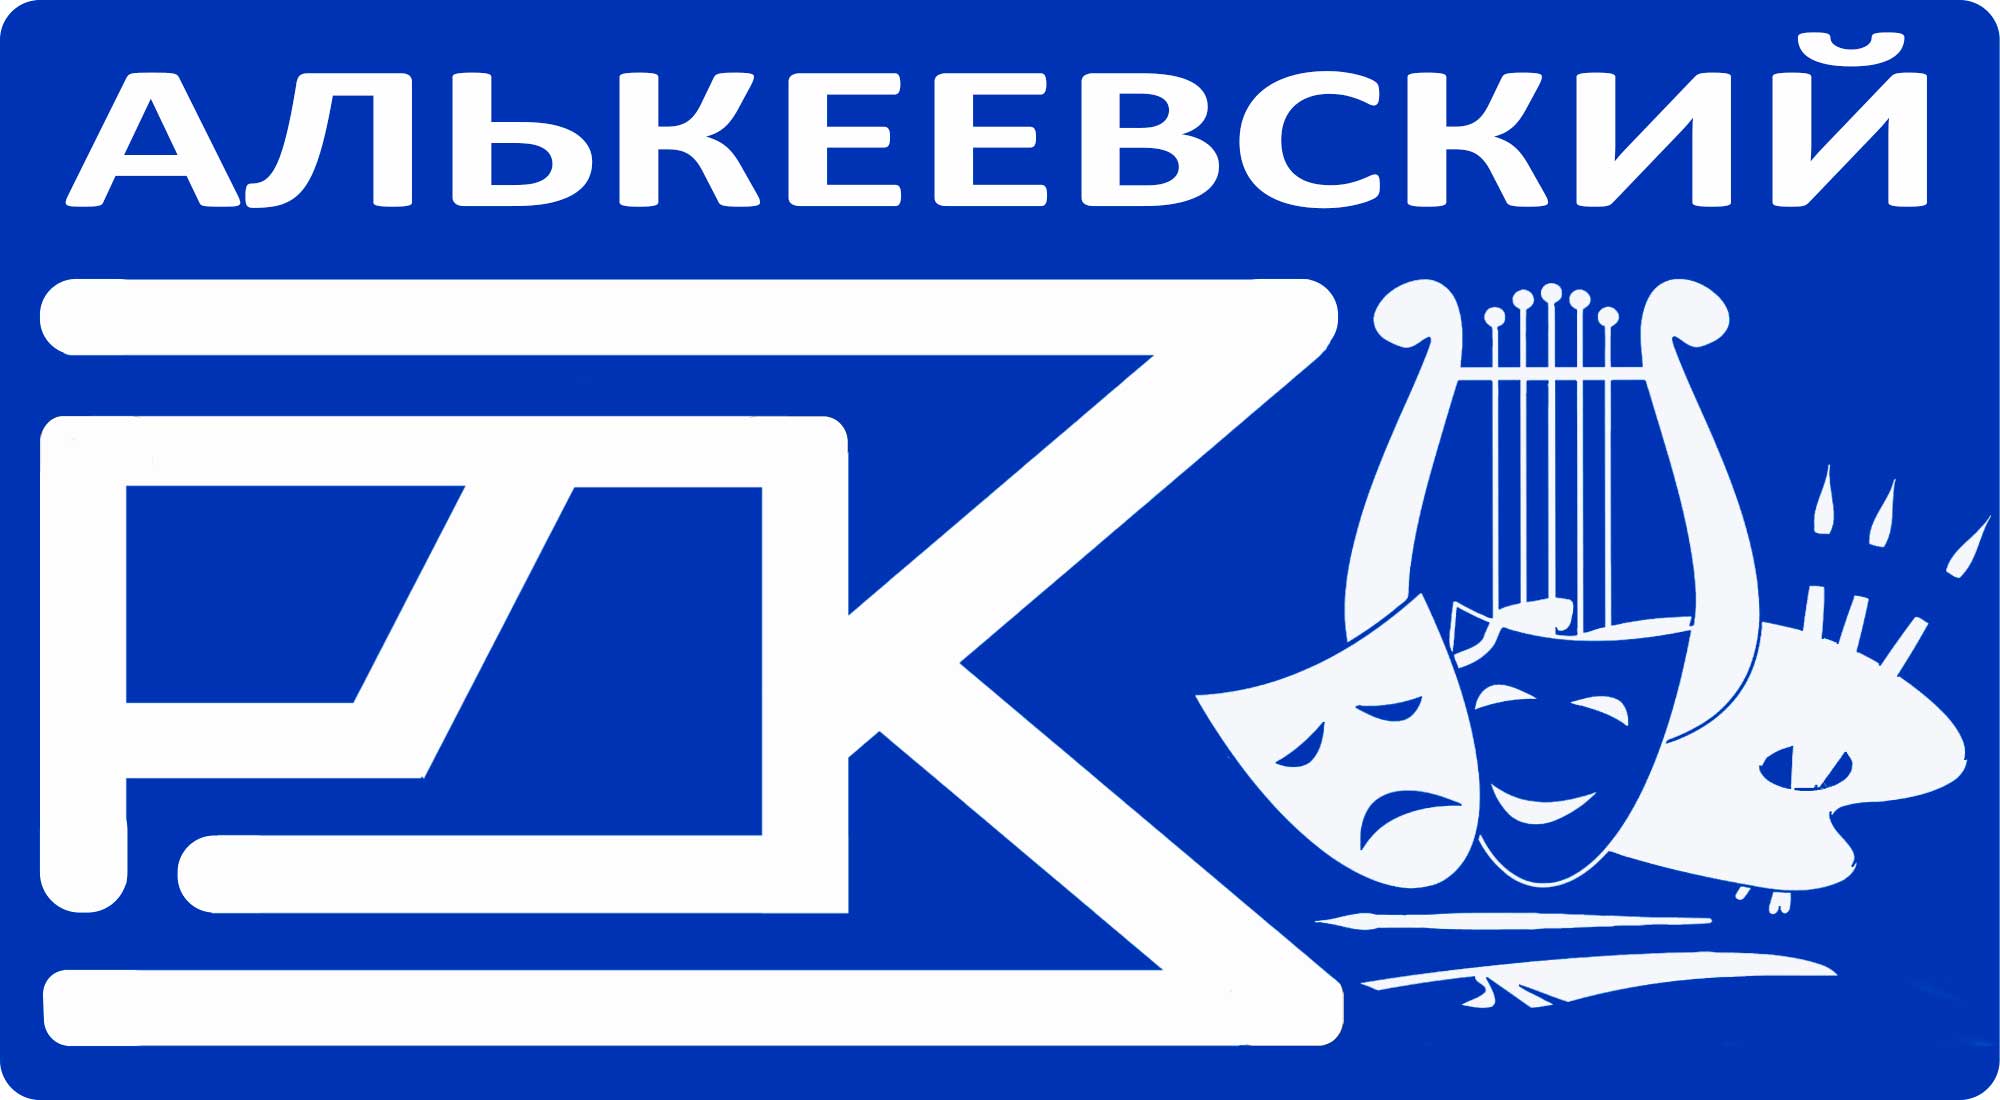 Рдк это кто. Алькеевский РДК. Флаг РДК. Эмблема РДК. Алькеевские вести логотип.